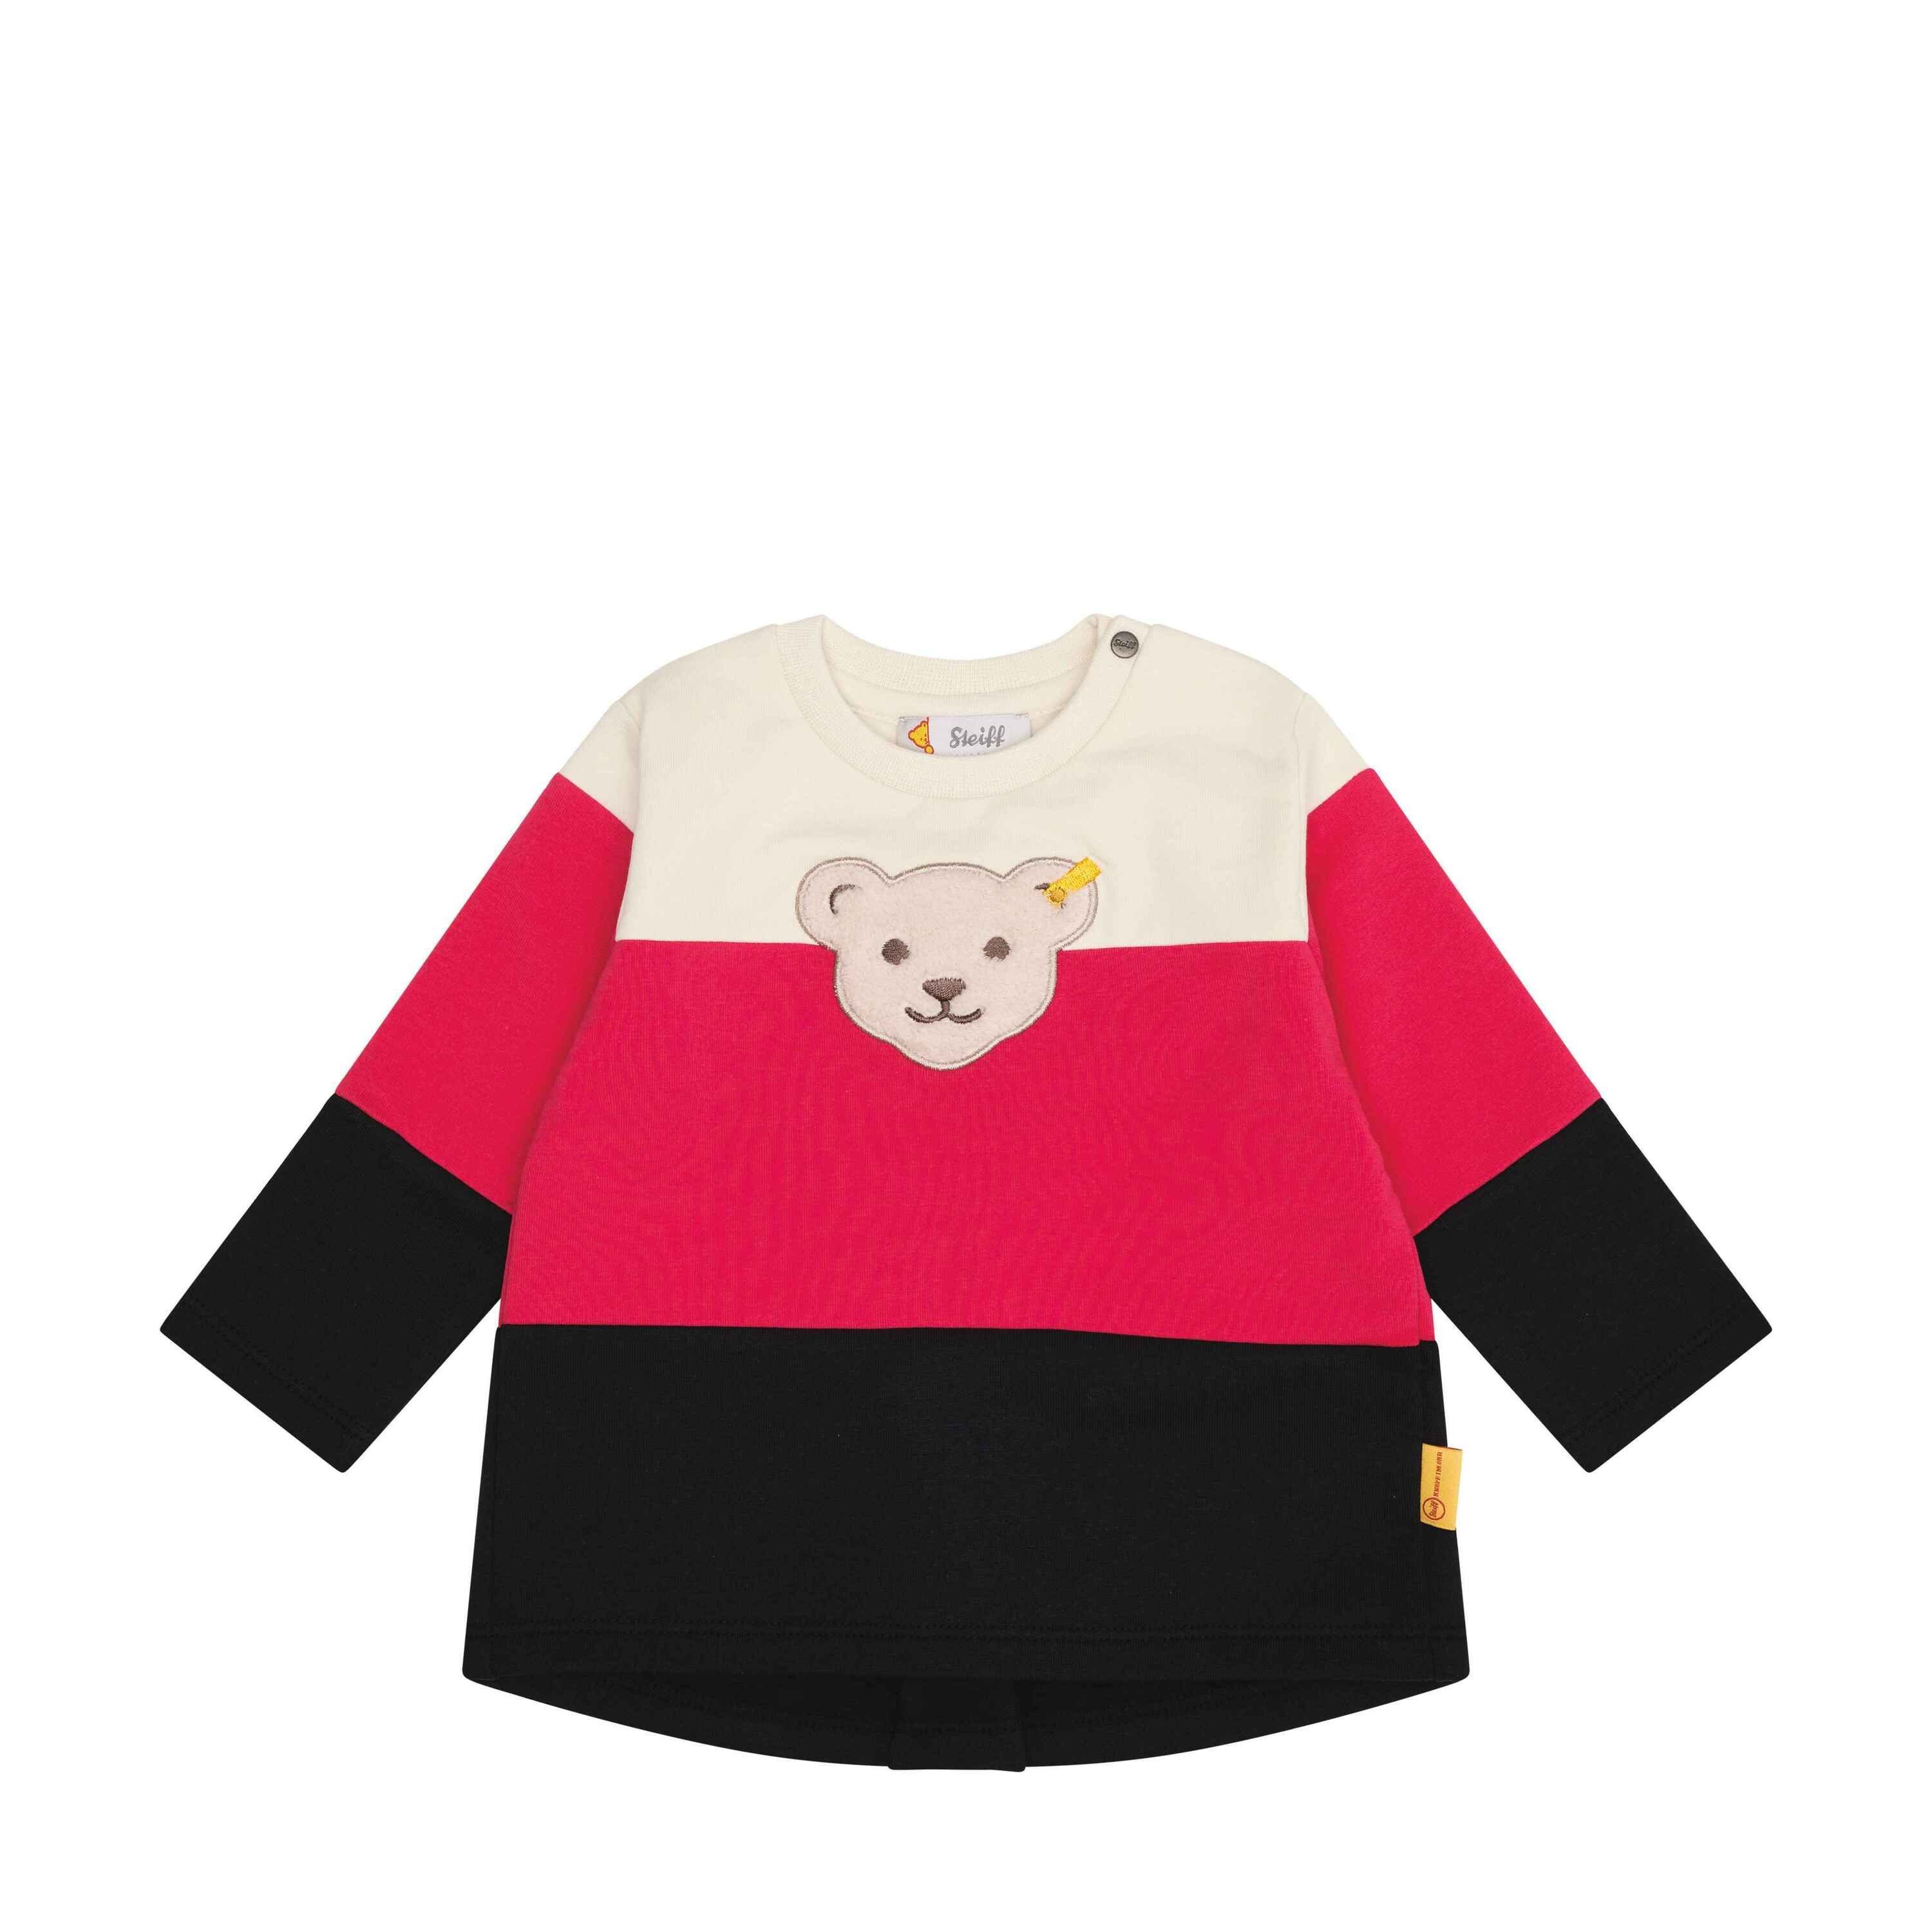 Steiff Sweatshirt des Teddybären Jahr Sweatshirt